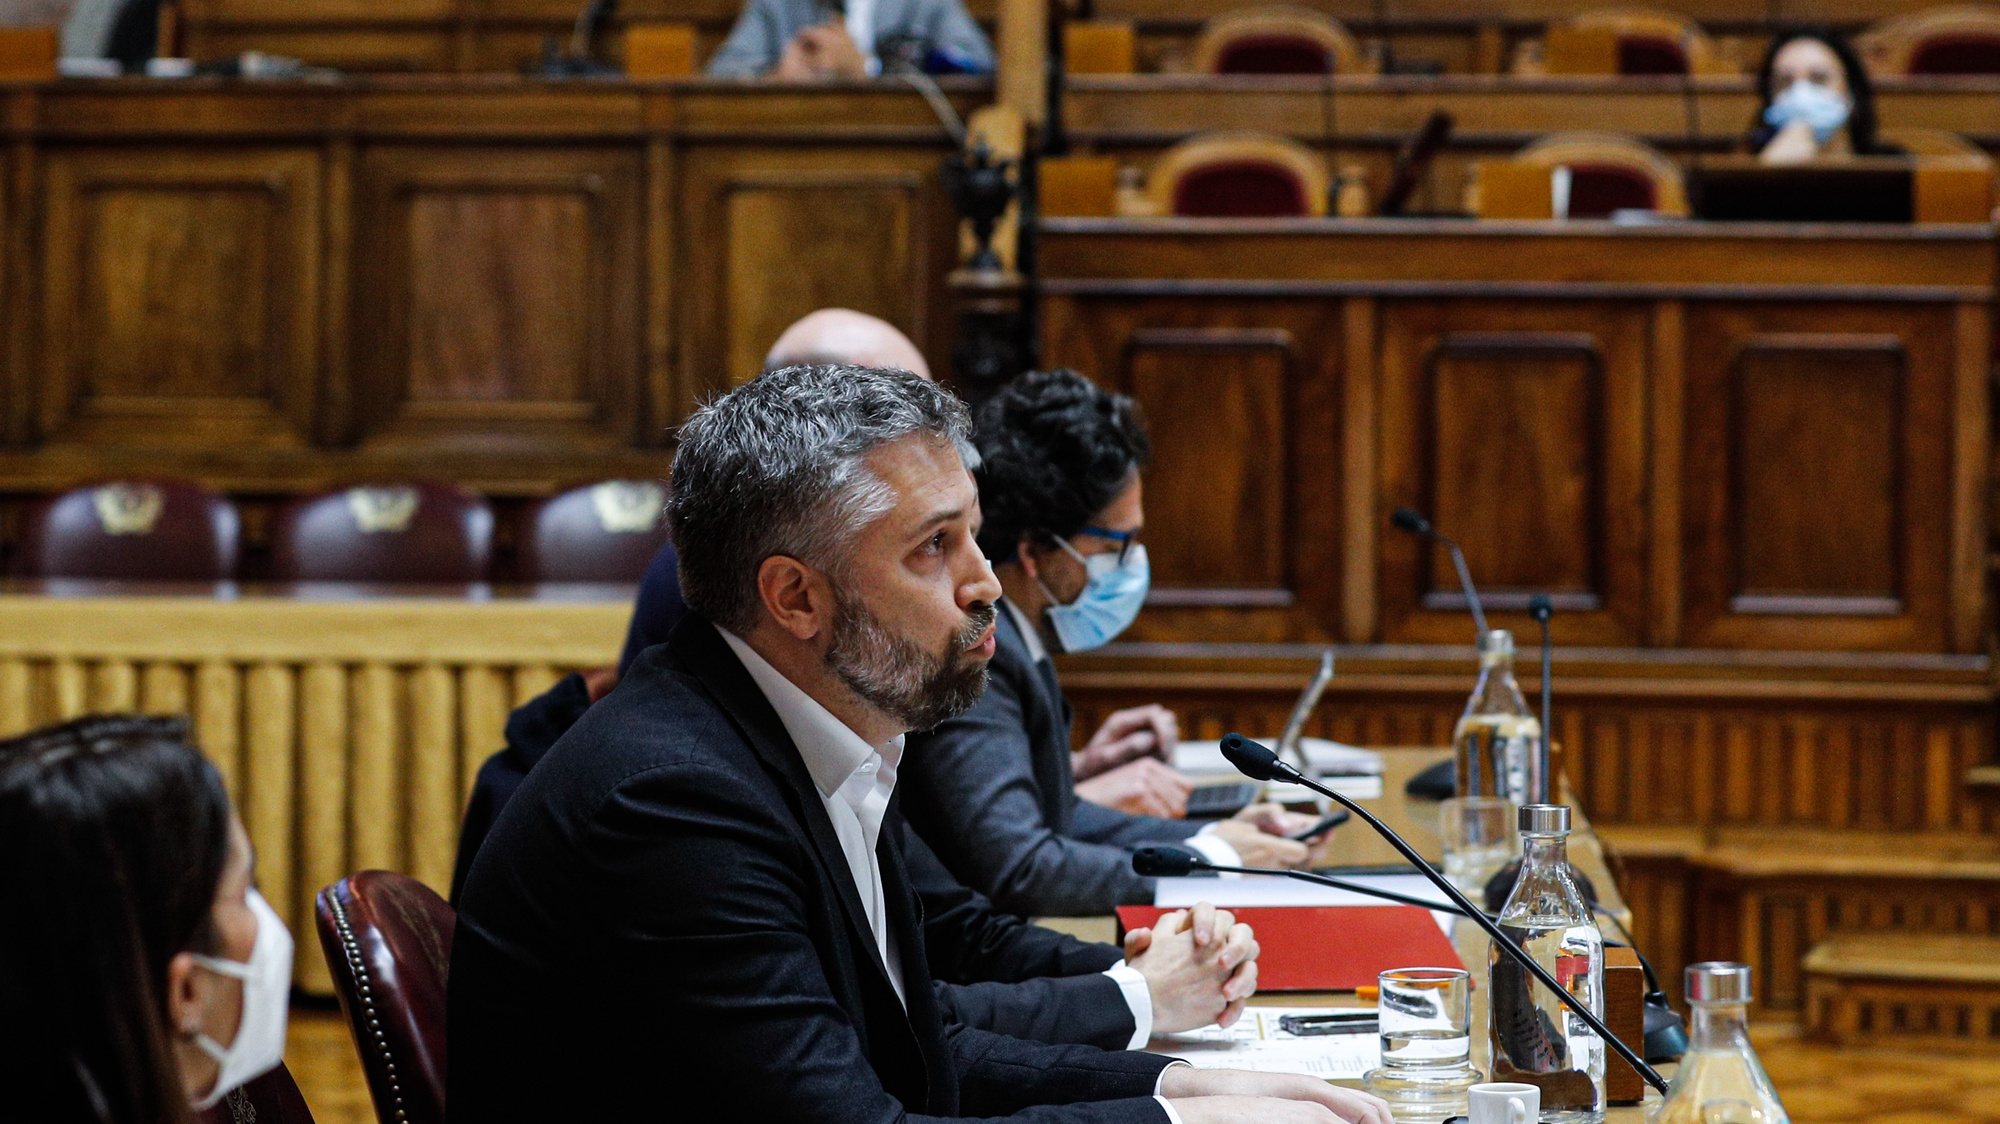 O ministro das Infraestruturas e da Habitação, Pedro Nuno Santos, intervém durante a sua audição perante a Comissão de Economia, Inovação, Obras Públicas e Habitação, na Assembleia da República, em Lisboa, 24 de março de 2021. ANTÓNIO COTRIM/LUSA